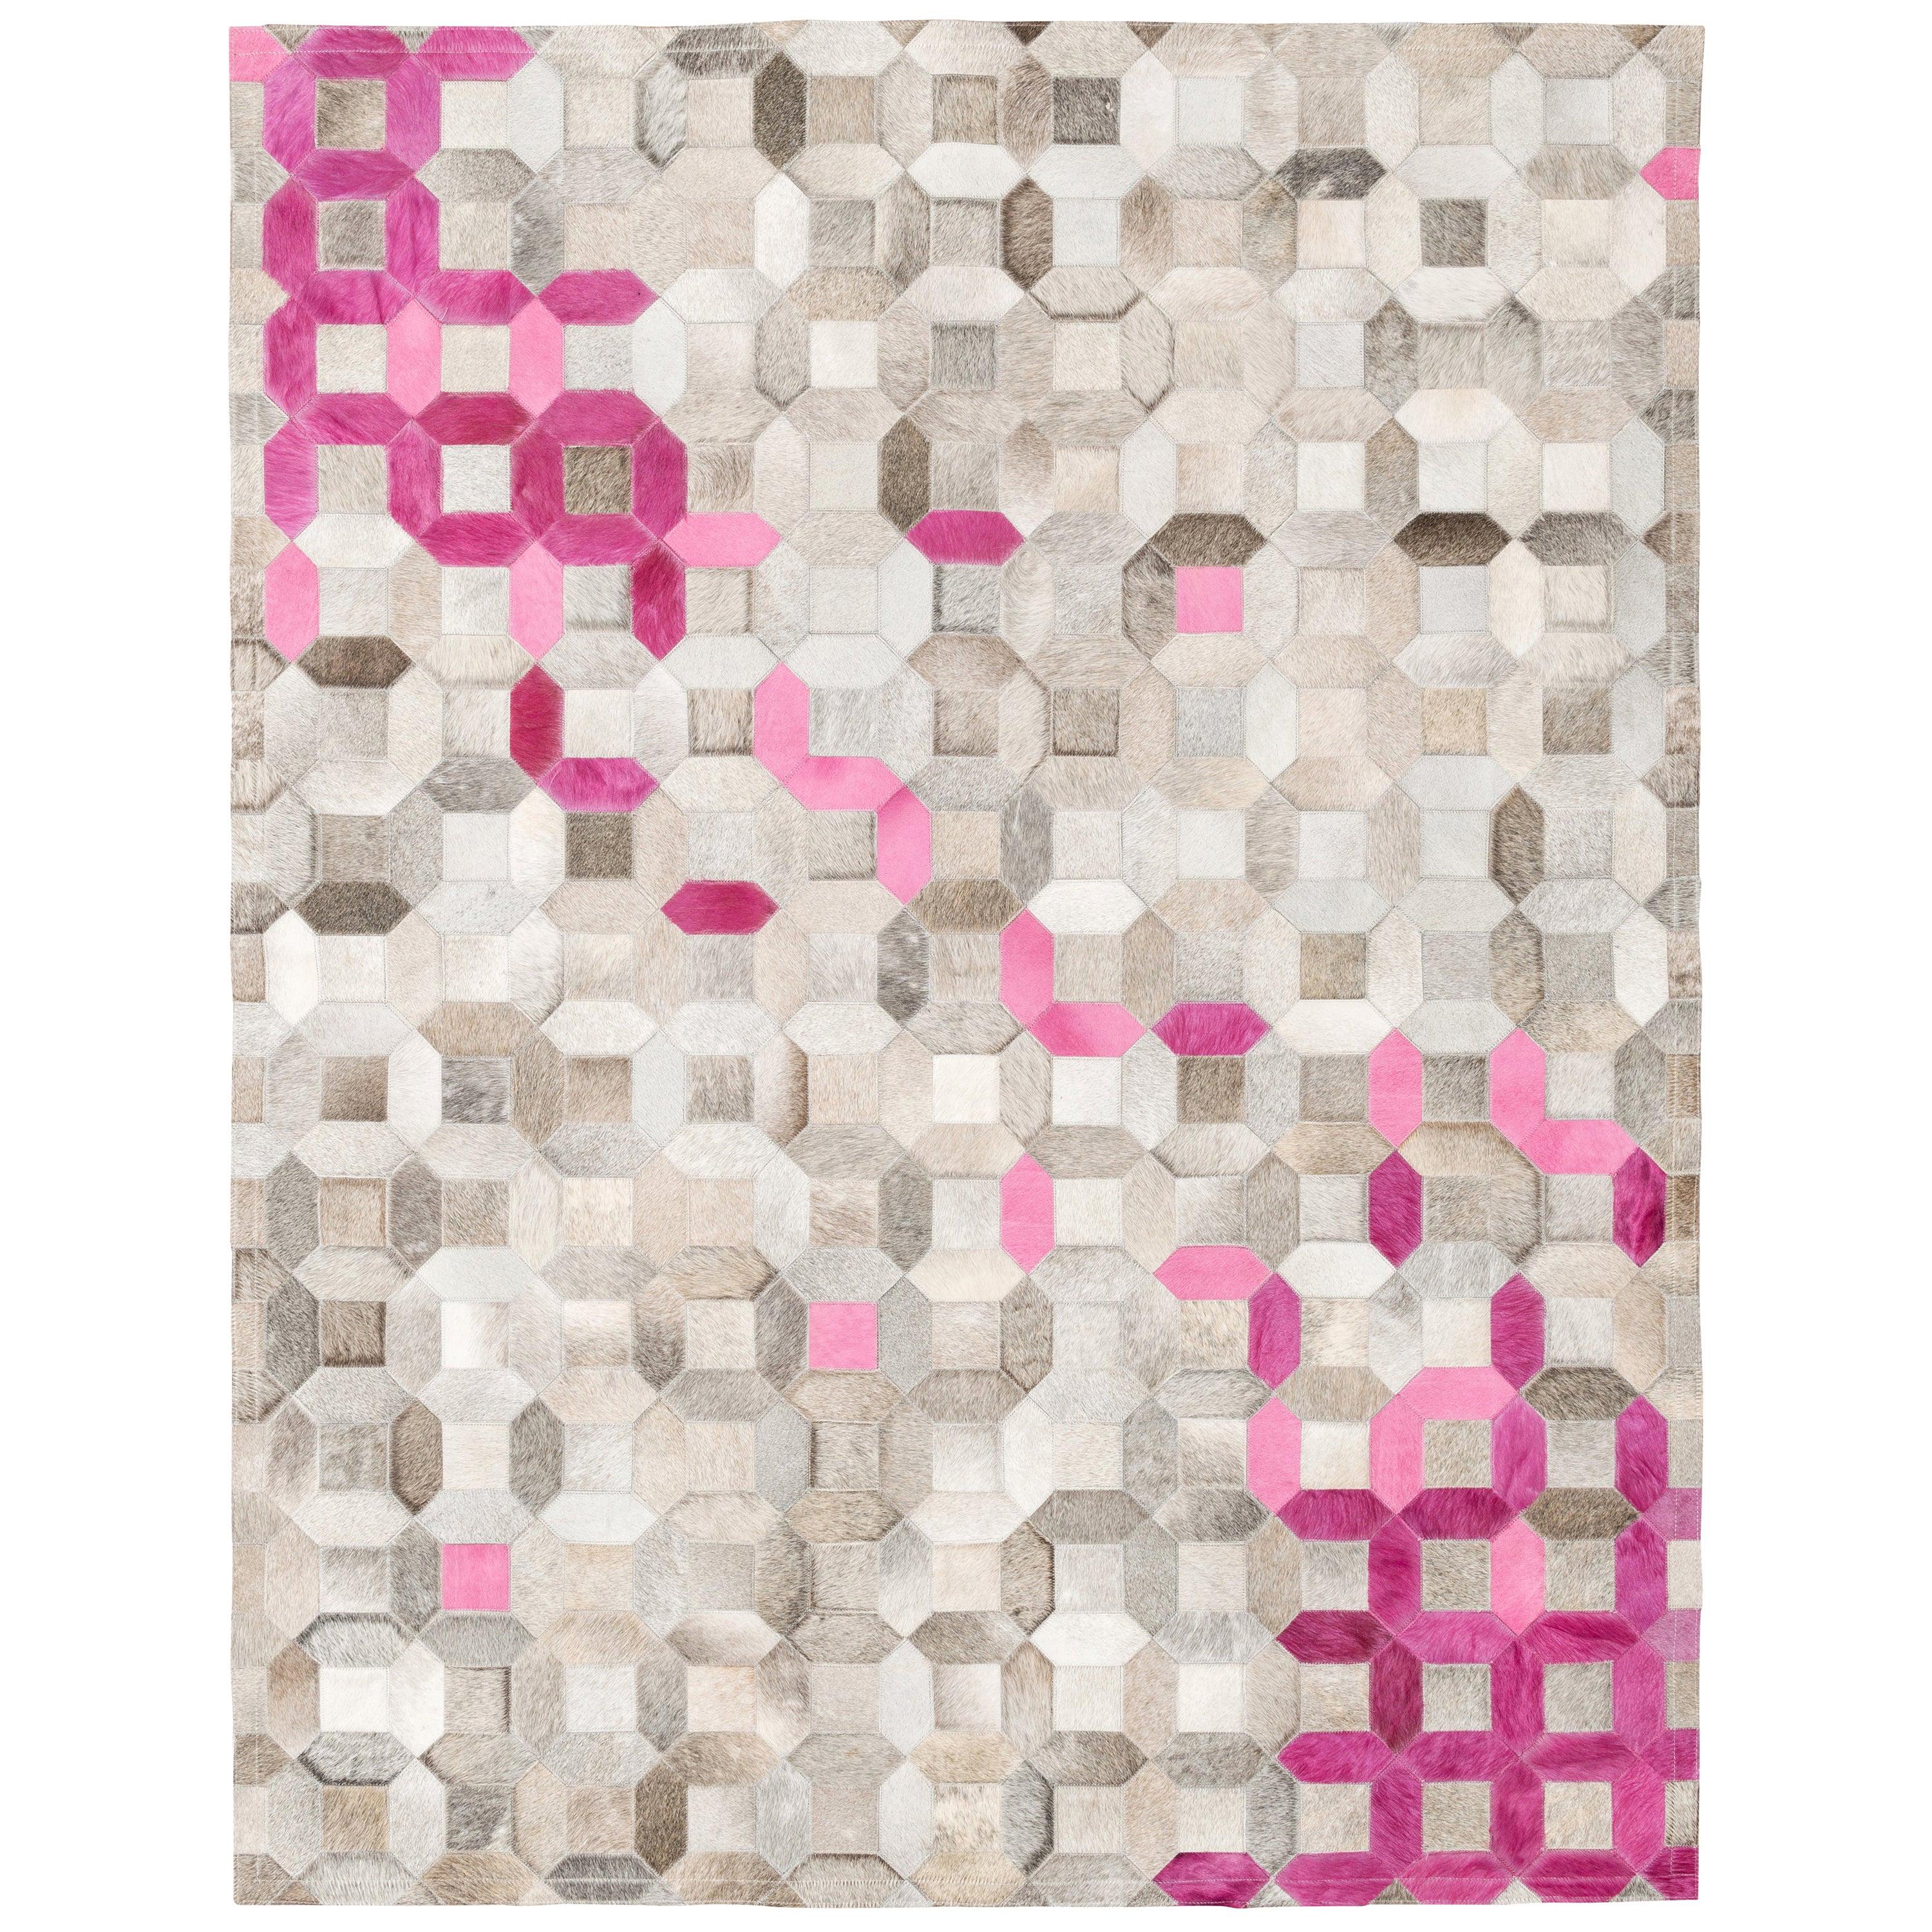 Anpassbarer Bodenteppich aus Rindsleder in Rosa mit grauer Mosaikarbeit, groß